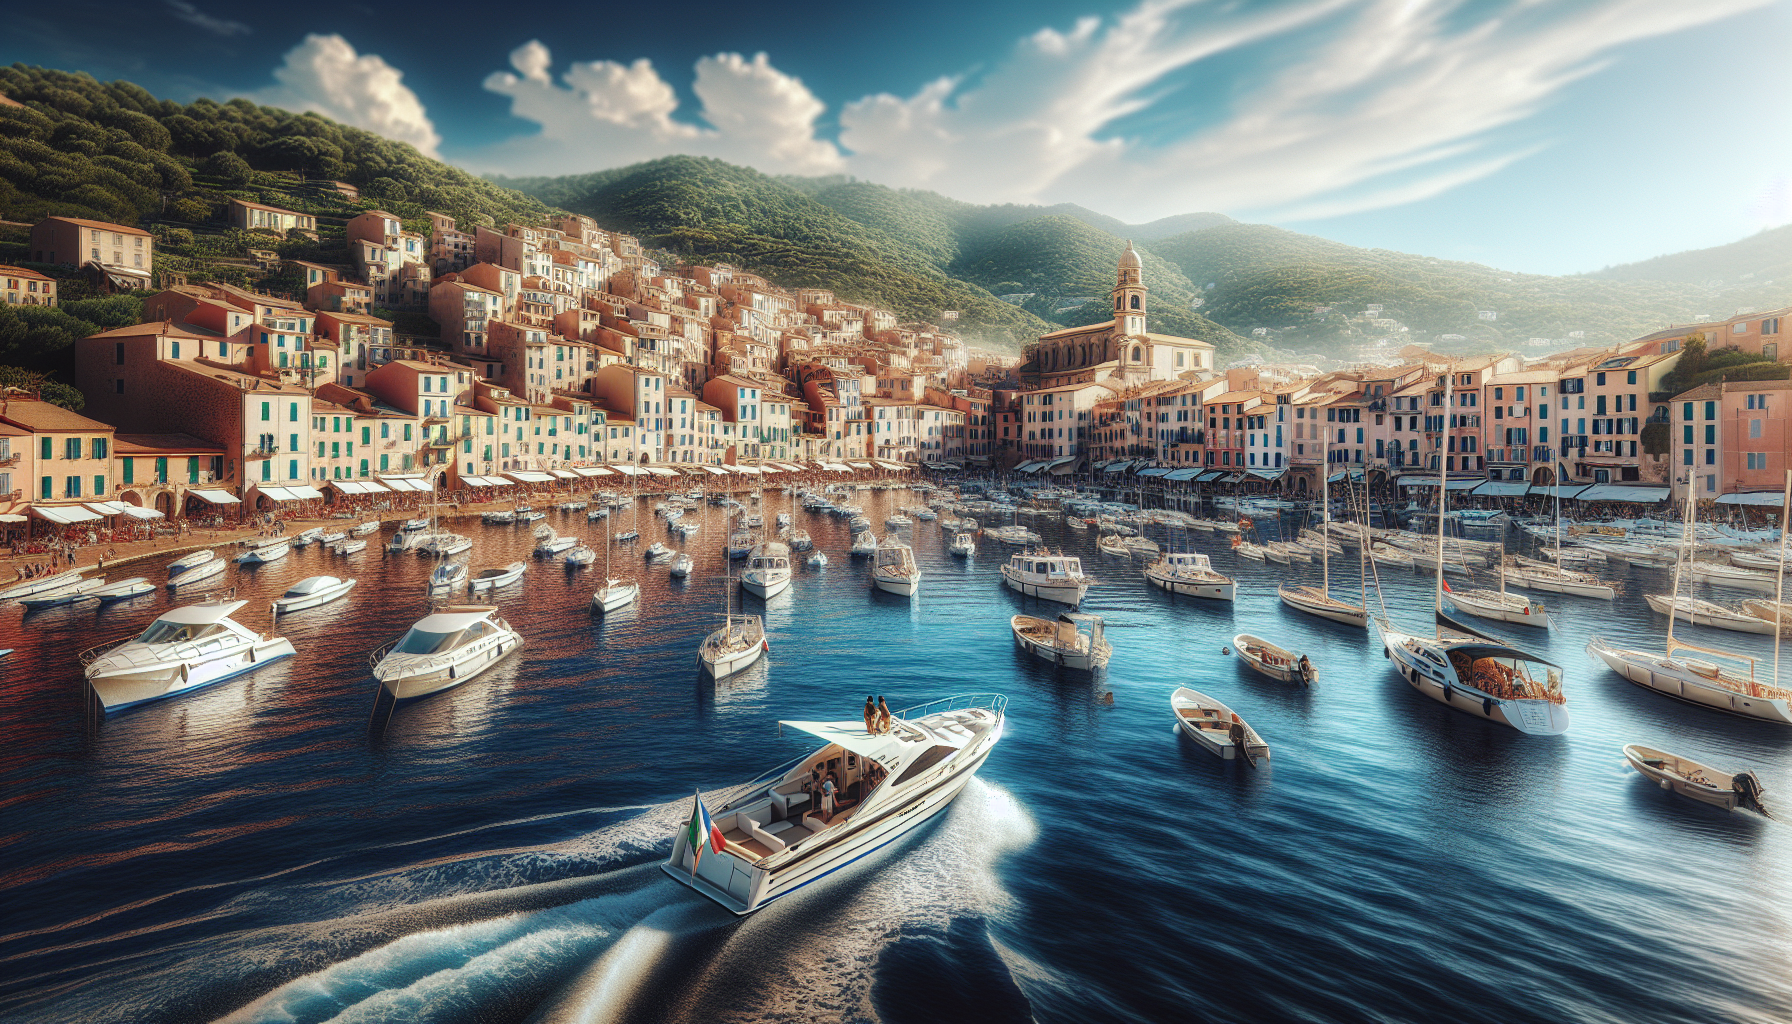 partez à la découverte des merveilles de propriano à bord d'un bateau en corse et vivez une expérience inoubliable au cœur de la méditerranée.